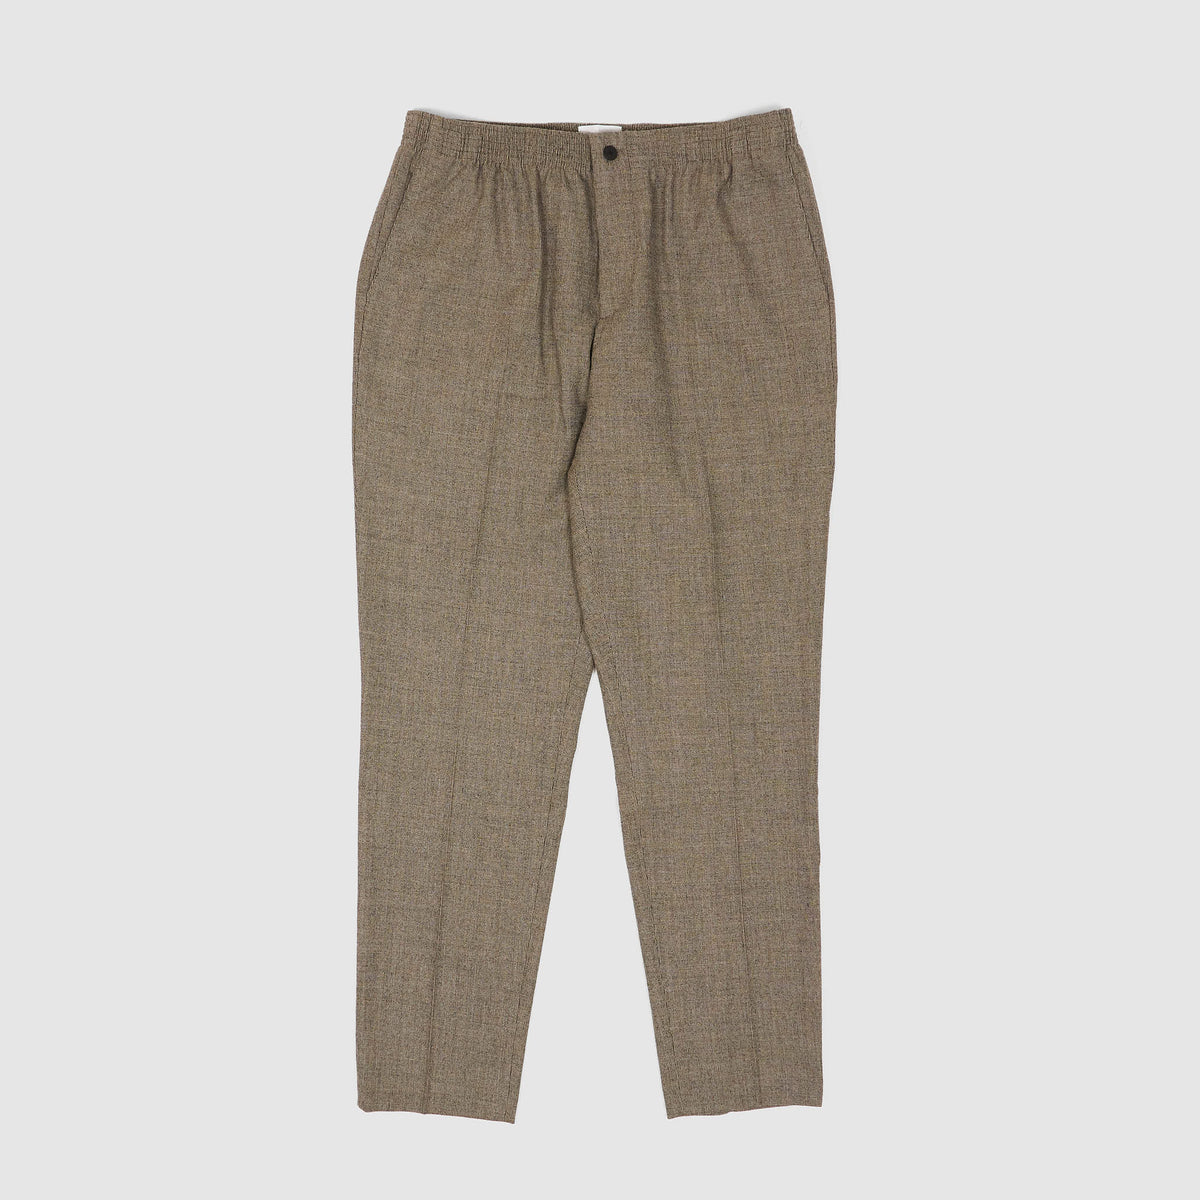 Cellar Door Comfort Soft Wool Chino Pants